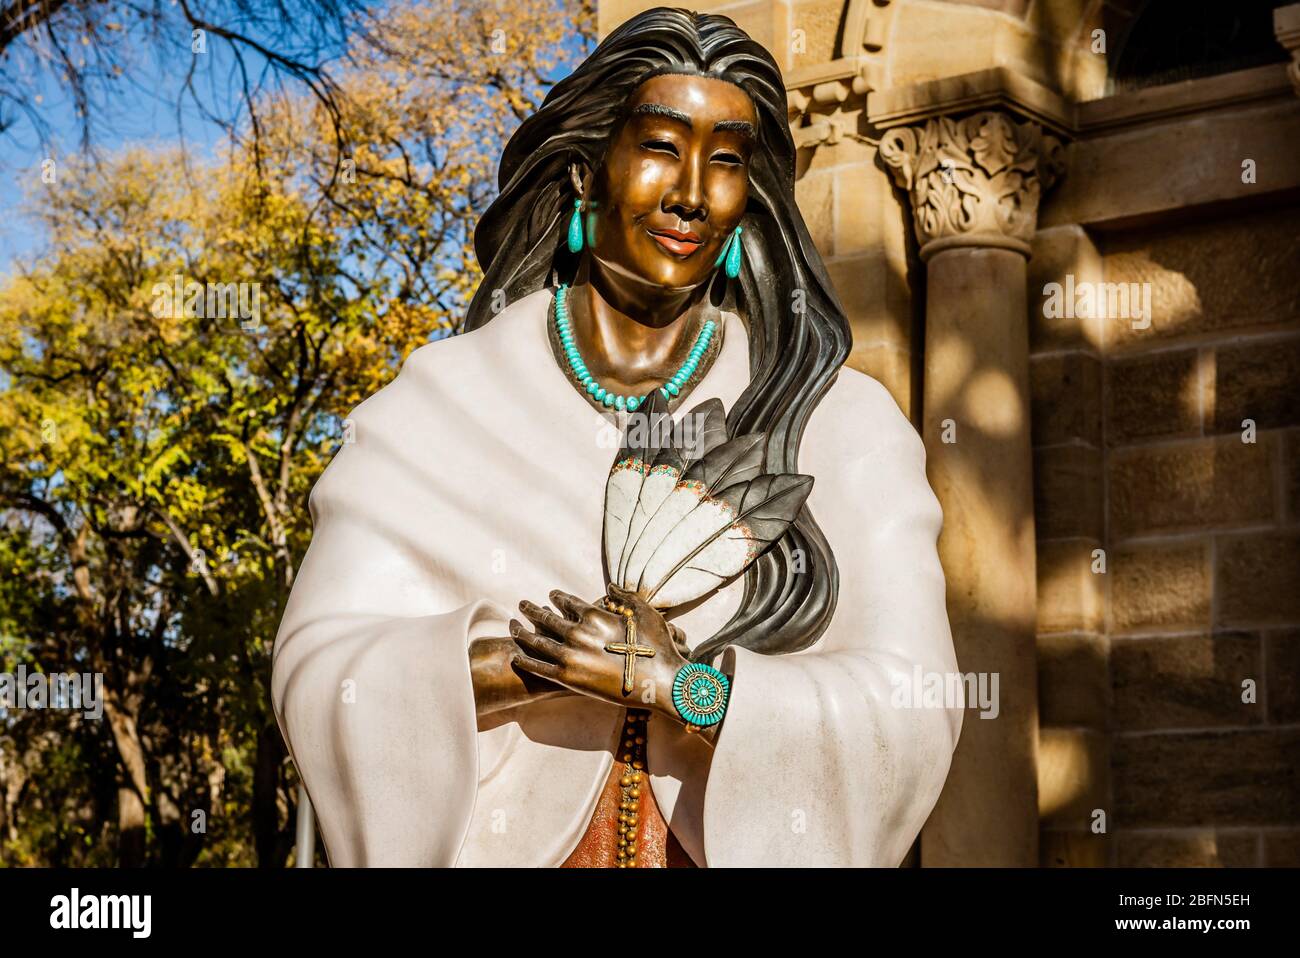 Saint Kateri Tekakwitha statue de bronze, sculptée par l'artiste de Jemez Pueblo Estella Loretto, première femme amérindienne à être canonisée, Santa Fe, NM.USA. Banque D'Images